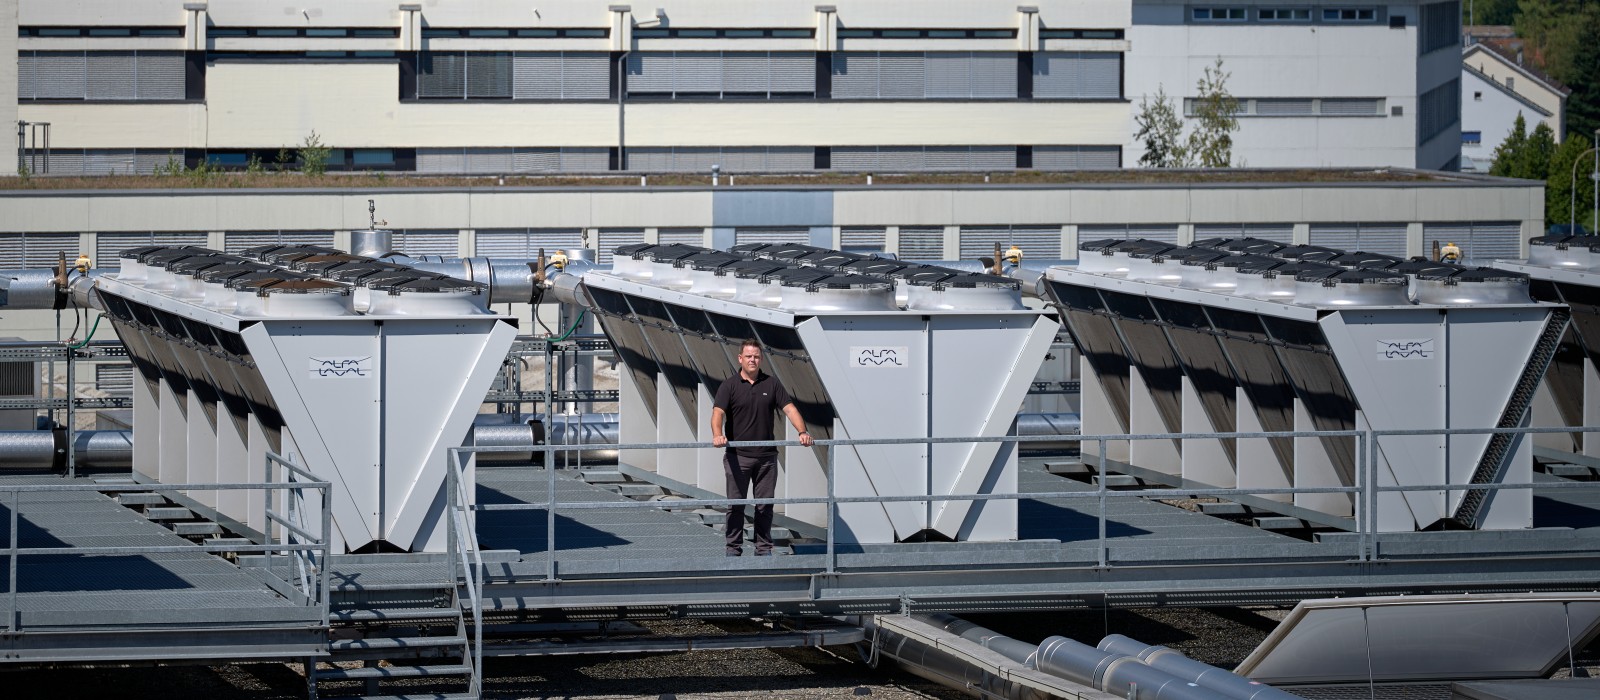 Die Ventilatoren auf dem Dach des schweizerischen Werks in Rapperswil-Jona sichern den energieeffizienten Wärme-Kälte-Austausch.